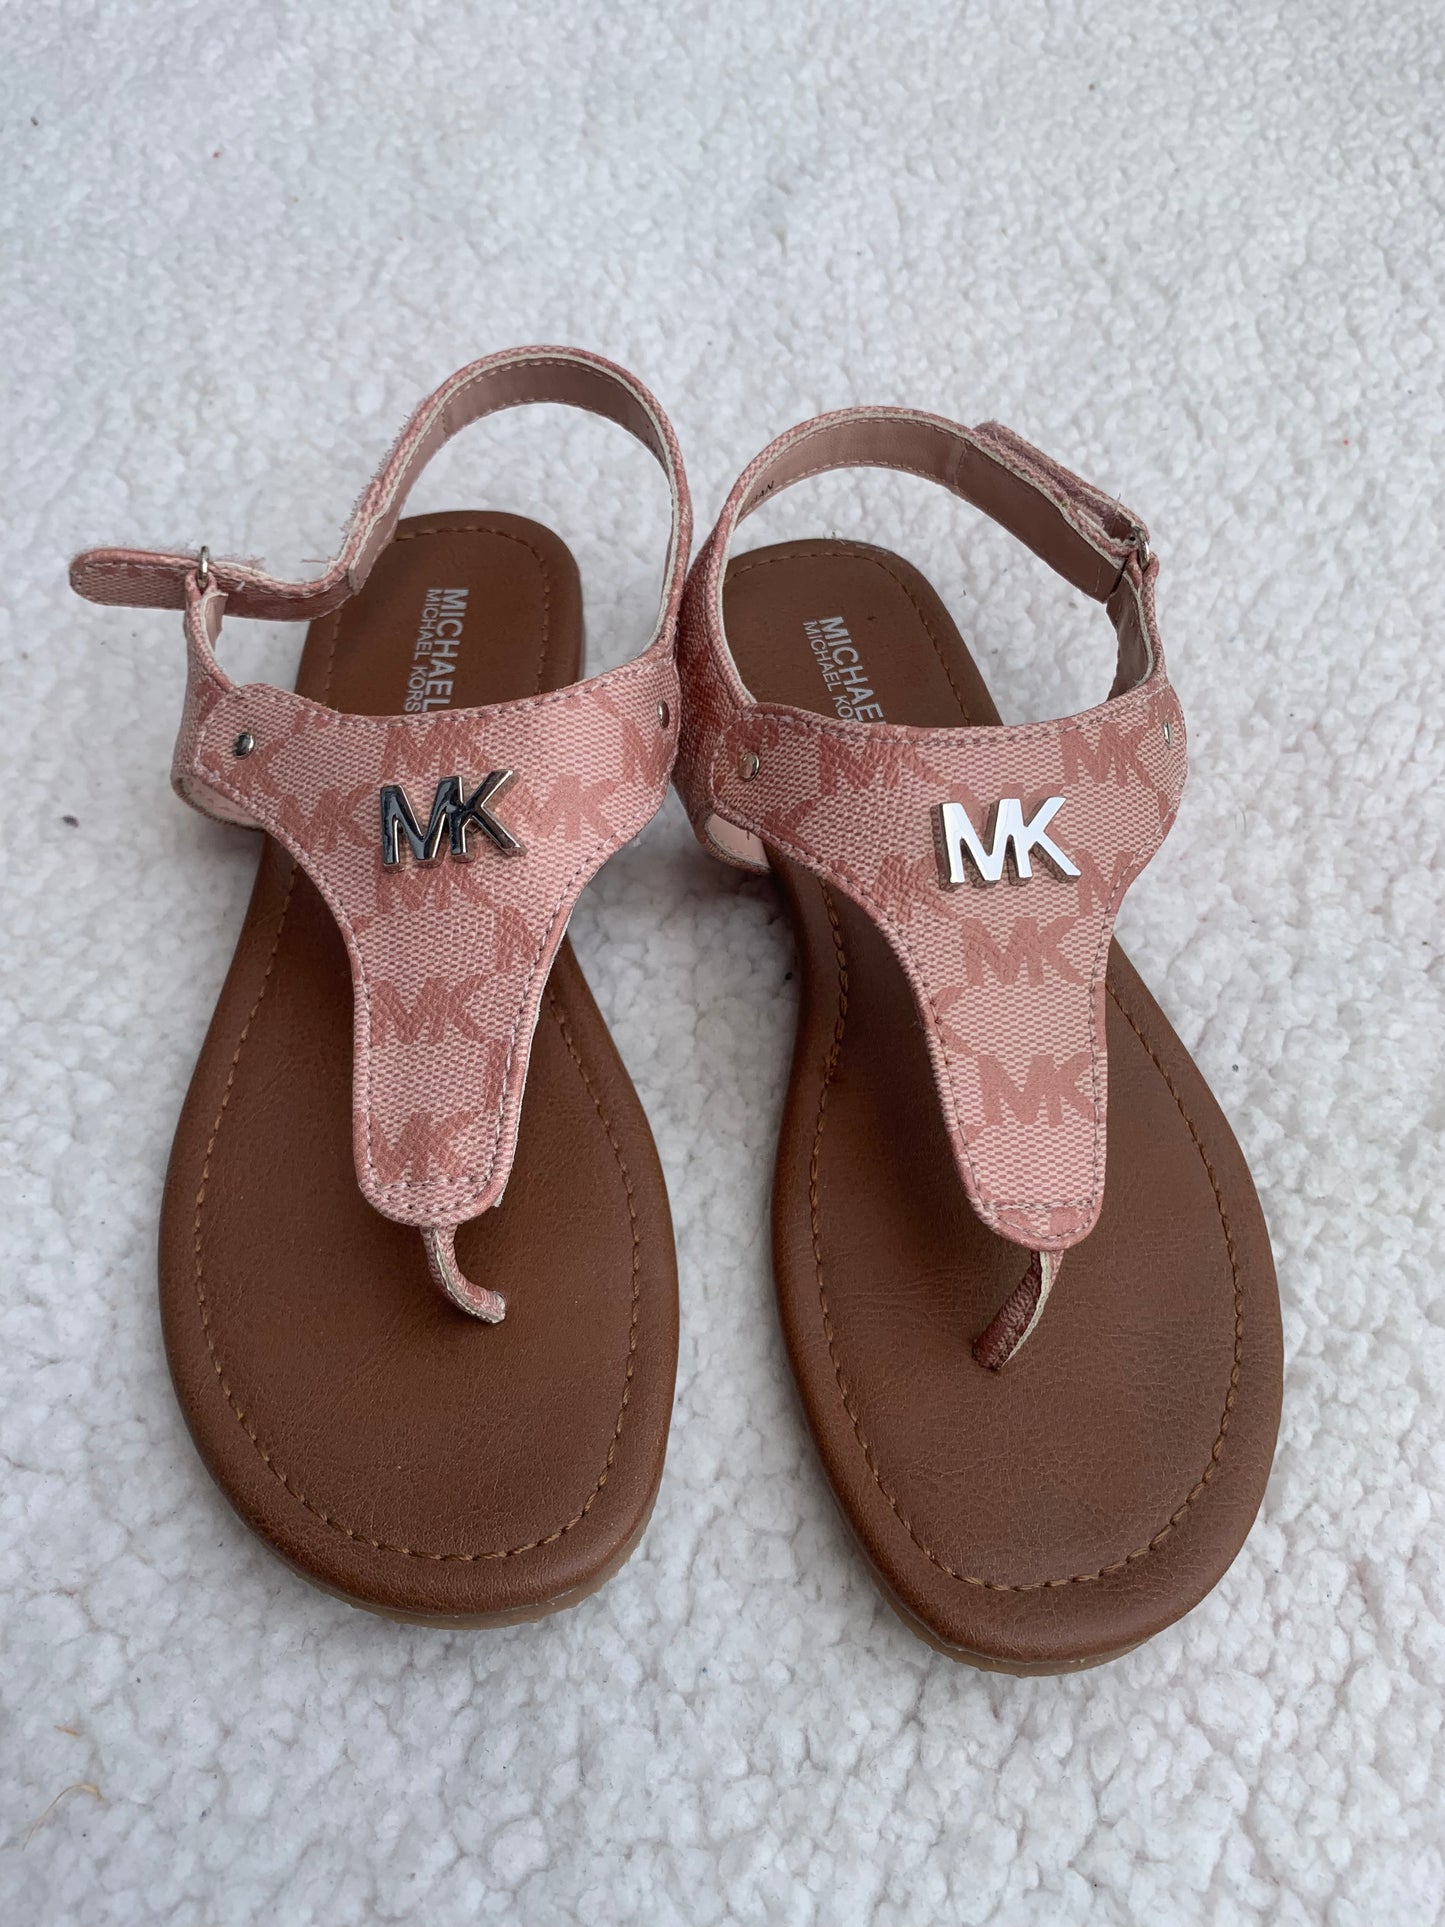 Michael kors sandal for kids